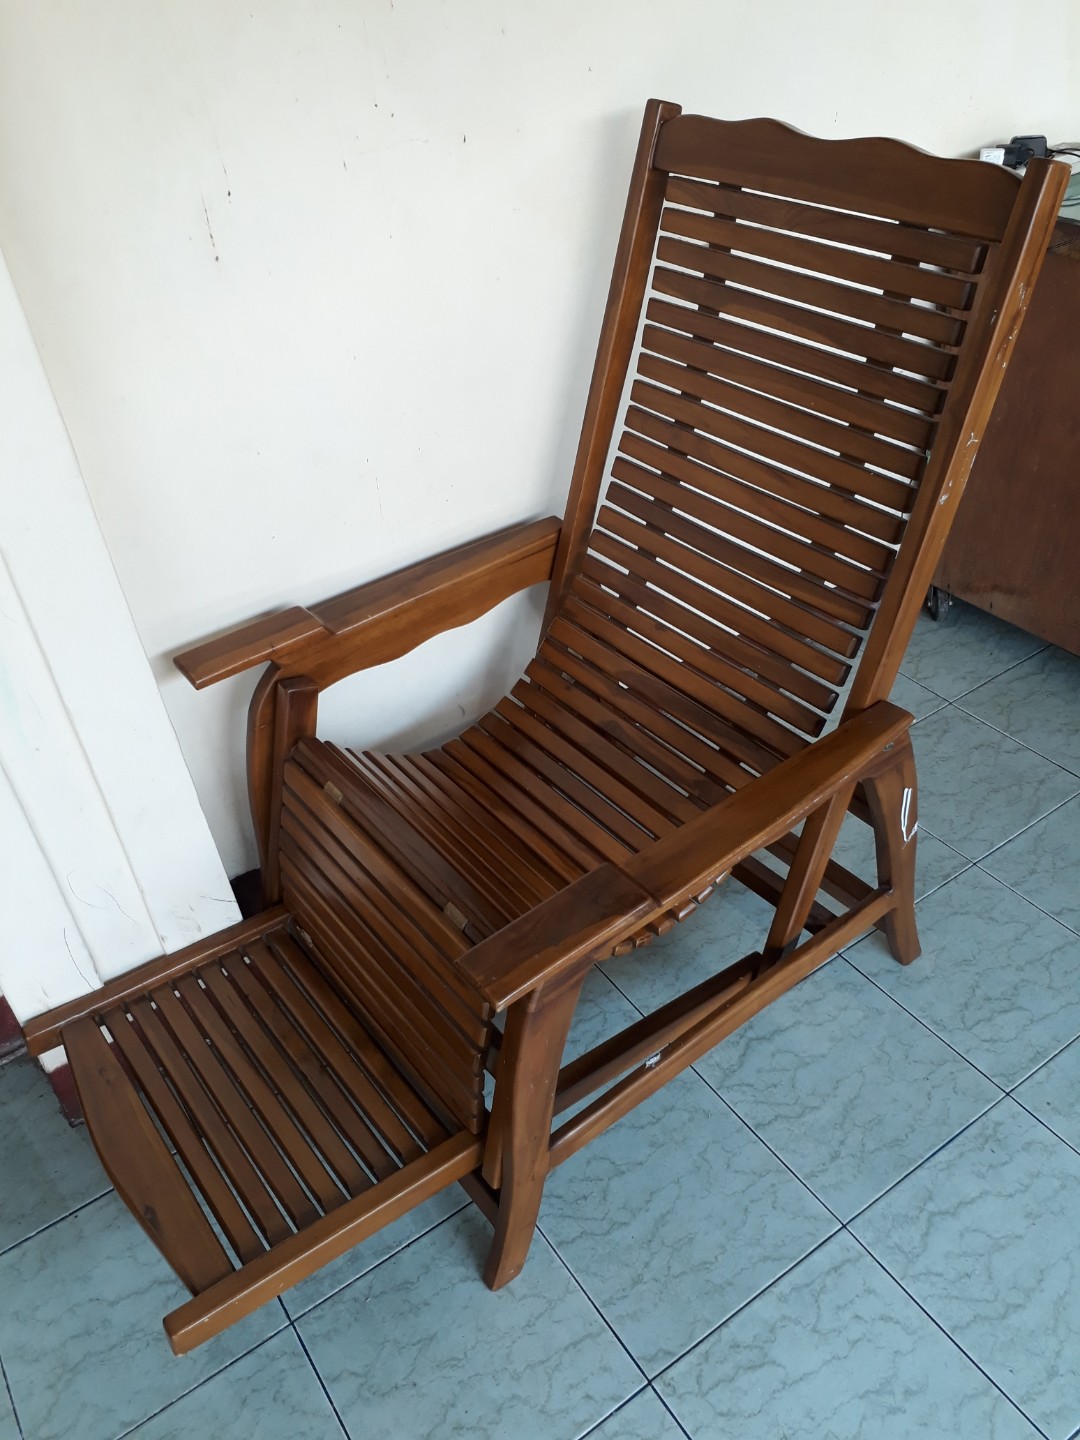 kursi santai bisa rebahan bahan kayu jati 2nd, perabotan rumah di